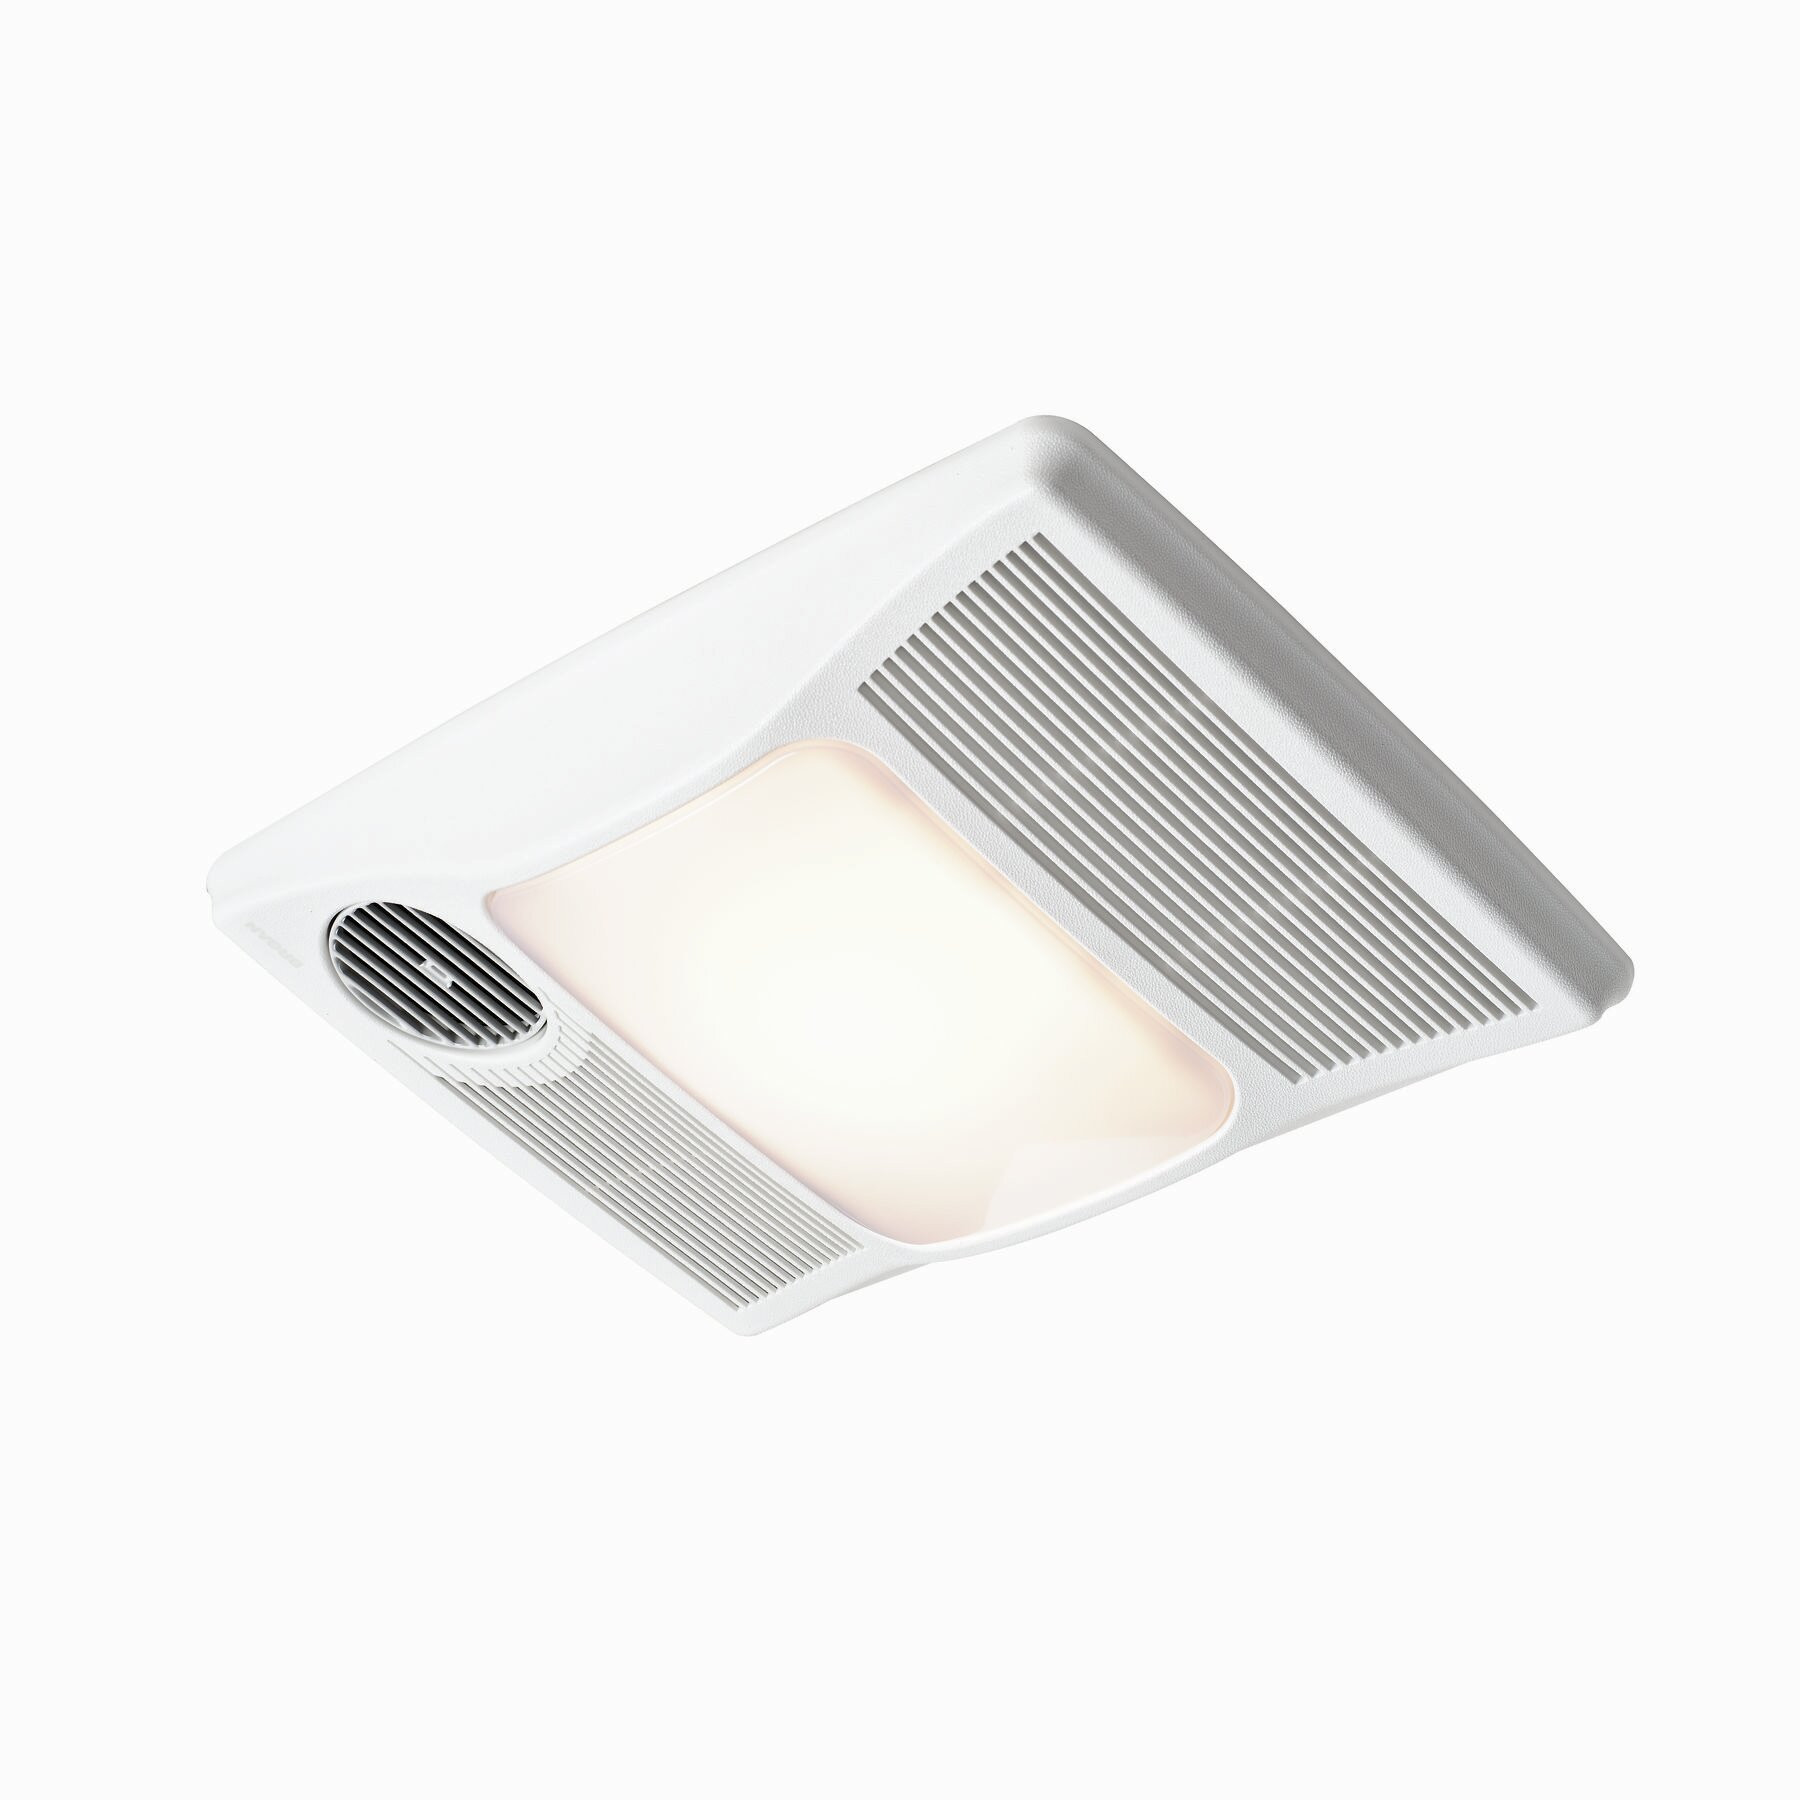 Broan Bathroom Fan Light
 Broan 100 CFM Bathroom Fan with Heater and Light & Reviews